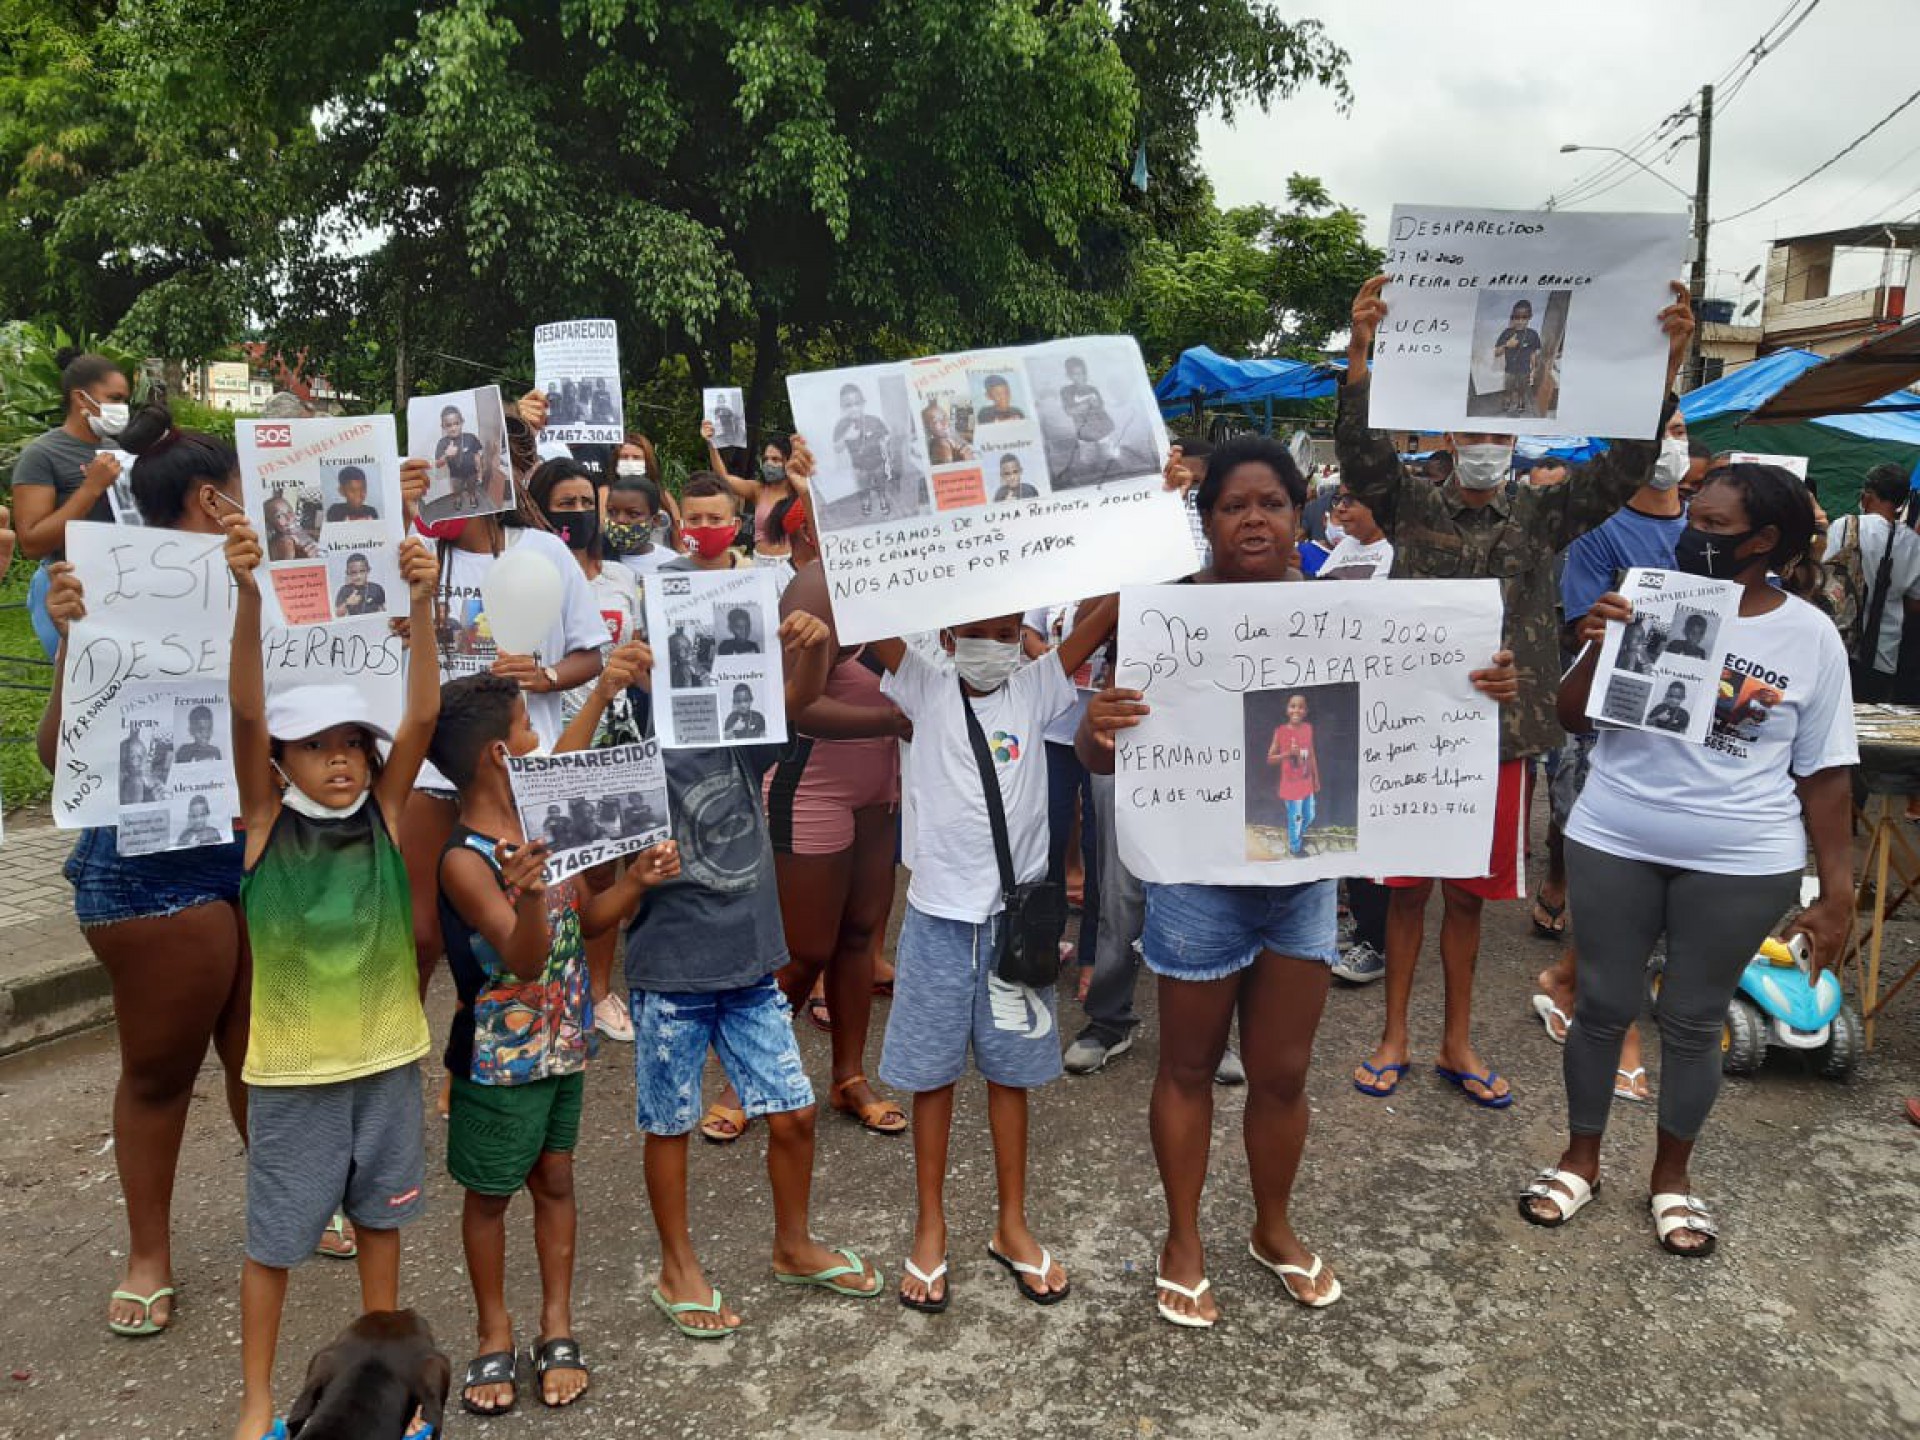 Familiares e amigos de meninos desaparecidos em Belford Roxo fizeram manifestação - Divulgação